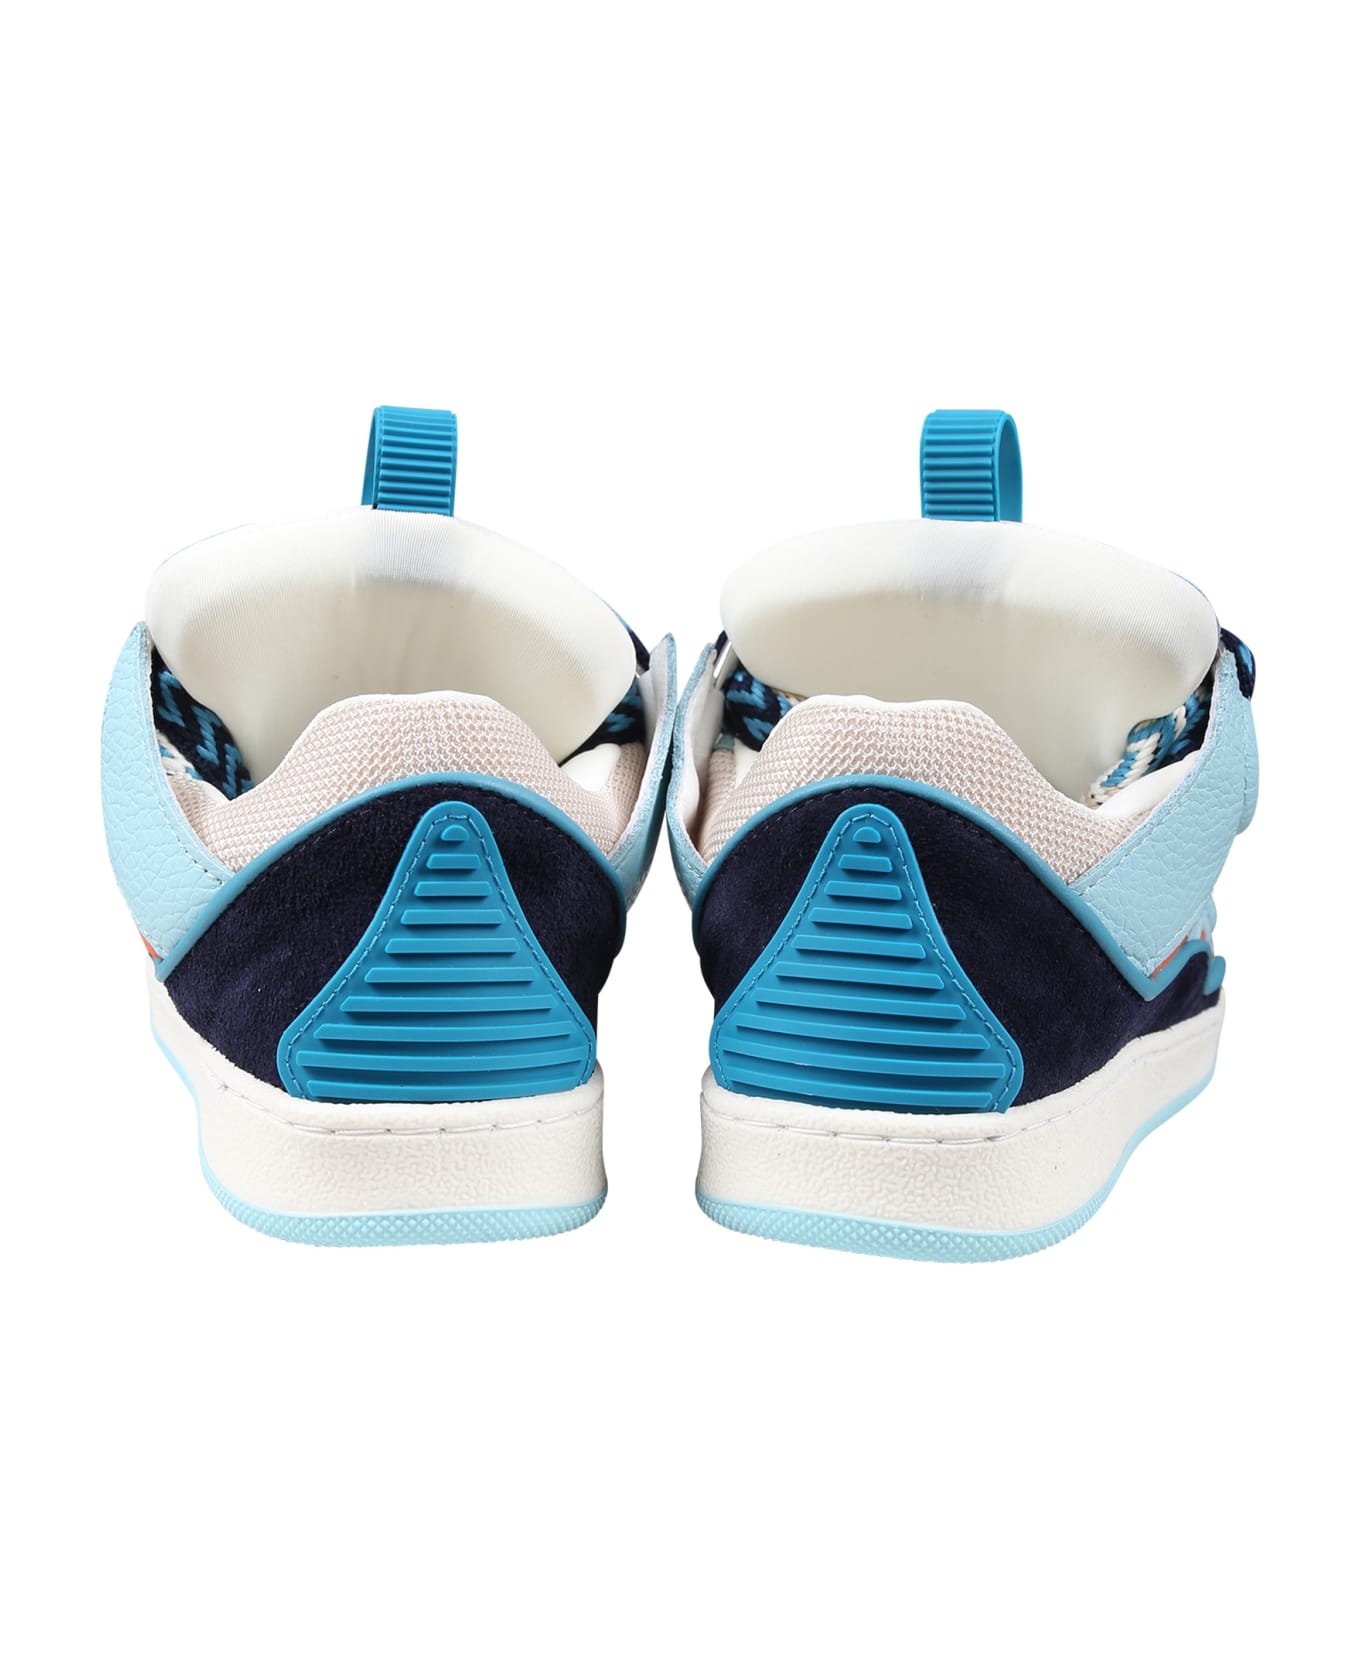 Lanvin Light Blue Sneakers For Boy - Blu シューズ